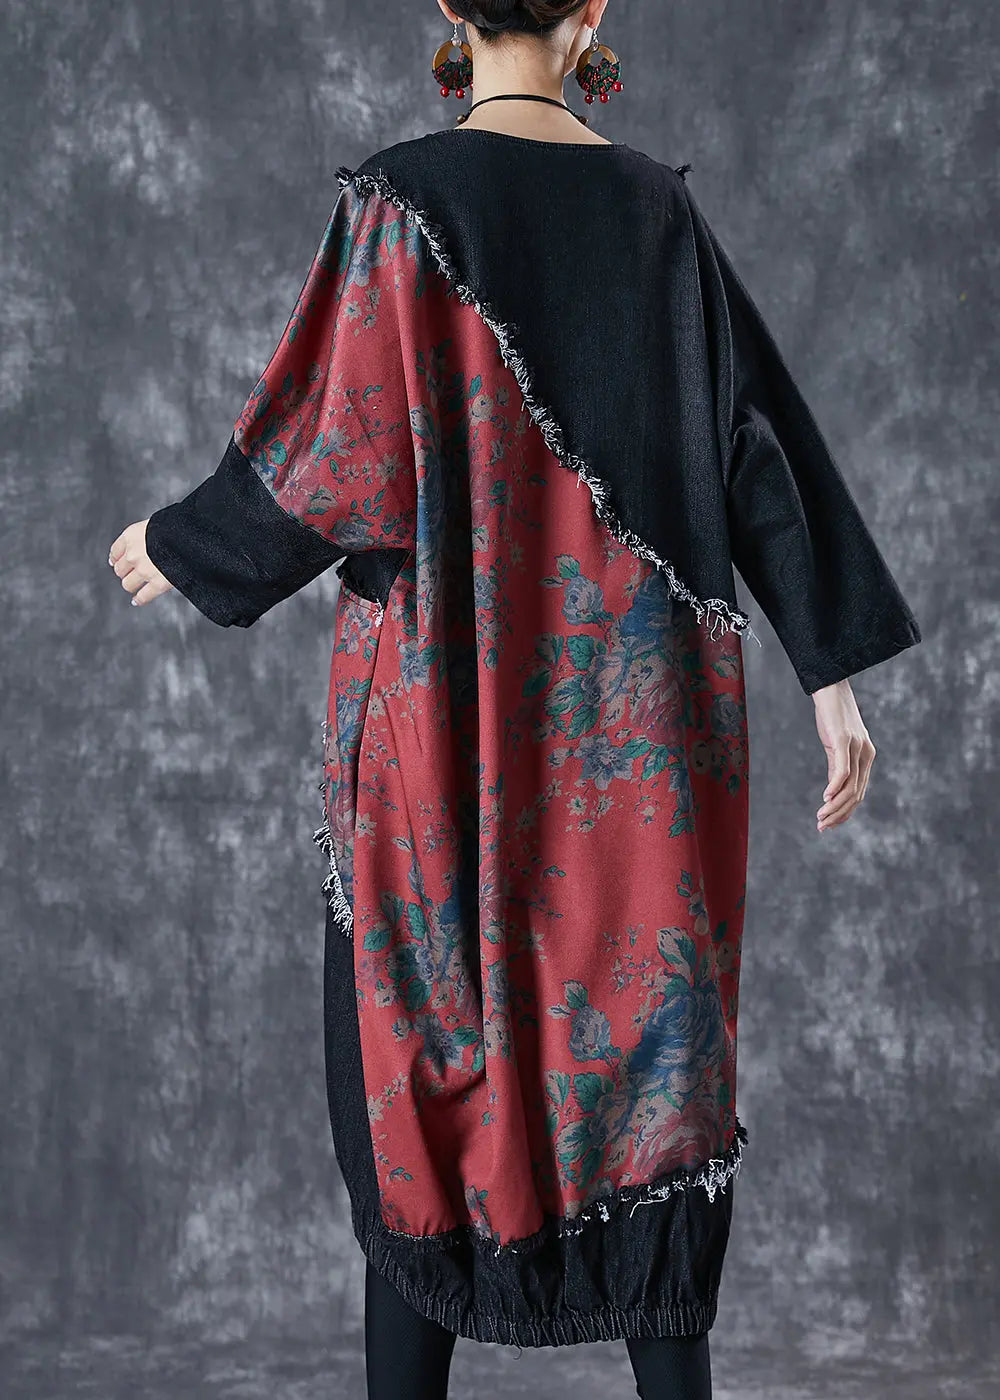 Bohemian Black Asymmetrical Patchwork Denim Holiday Dress Fall Ada Fashion